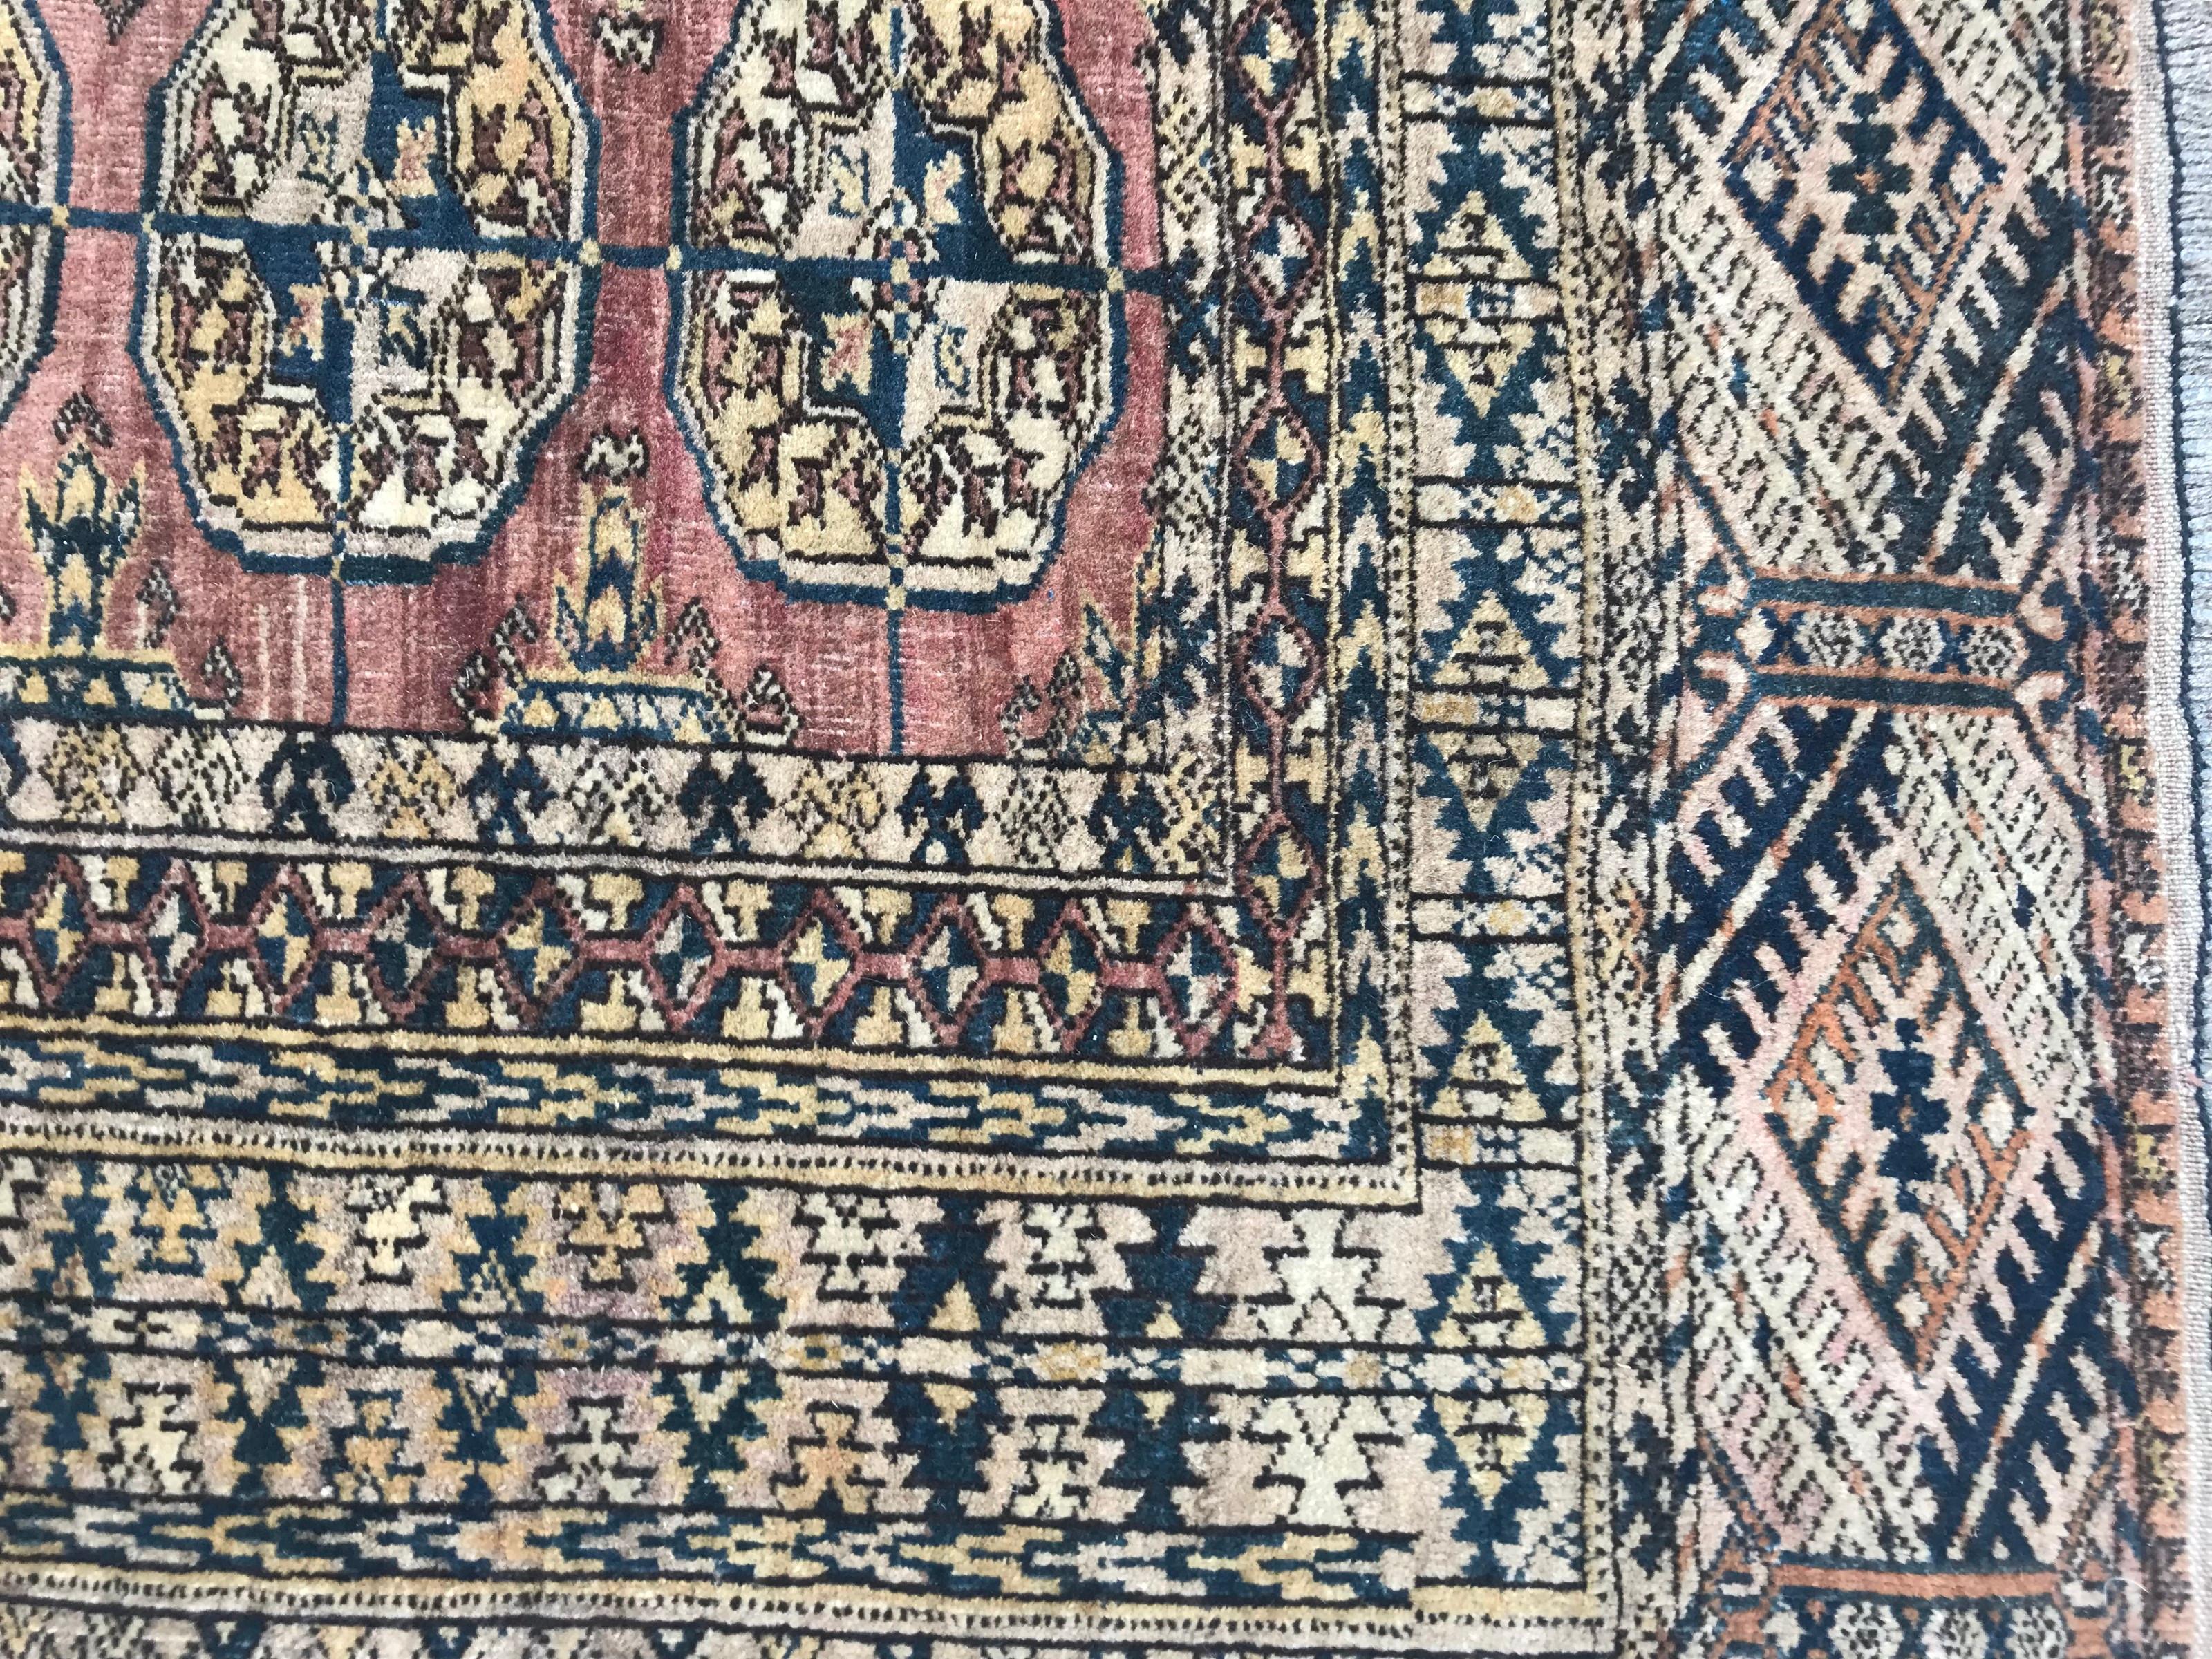 Schöner turkmenischer Teppich aus dem frühen 20. Jahrhundert mit schönem Boukhara-Muster und schönen Farben, vollständig handgeknüpft mit Wollsamt auf Wollfond.

✨✨✨
